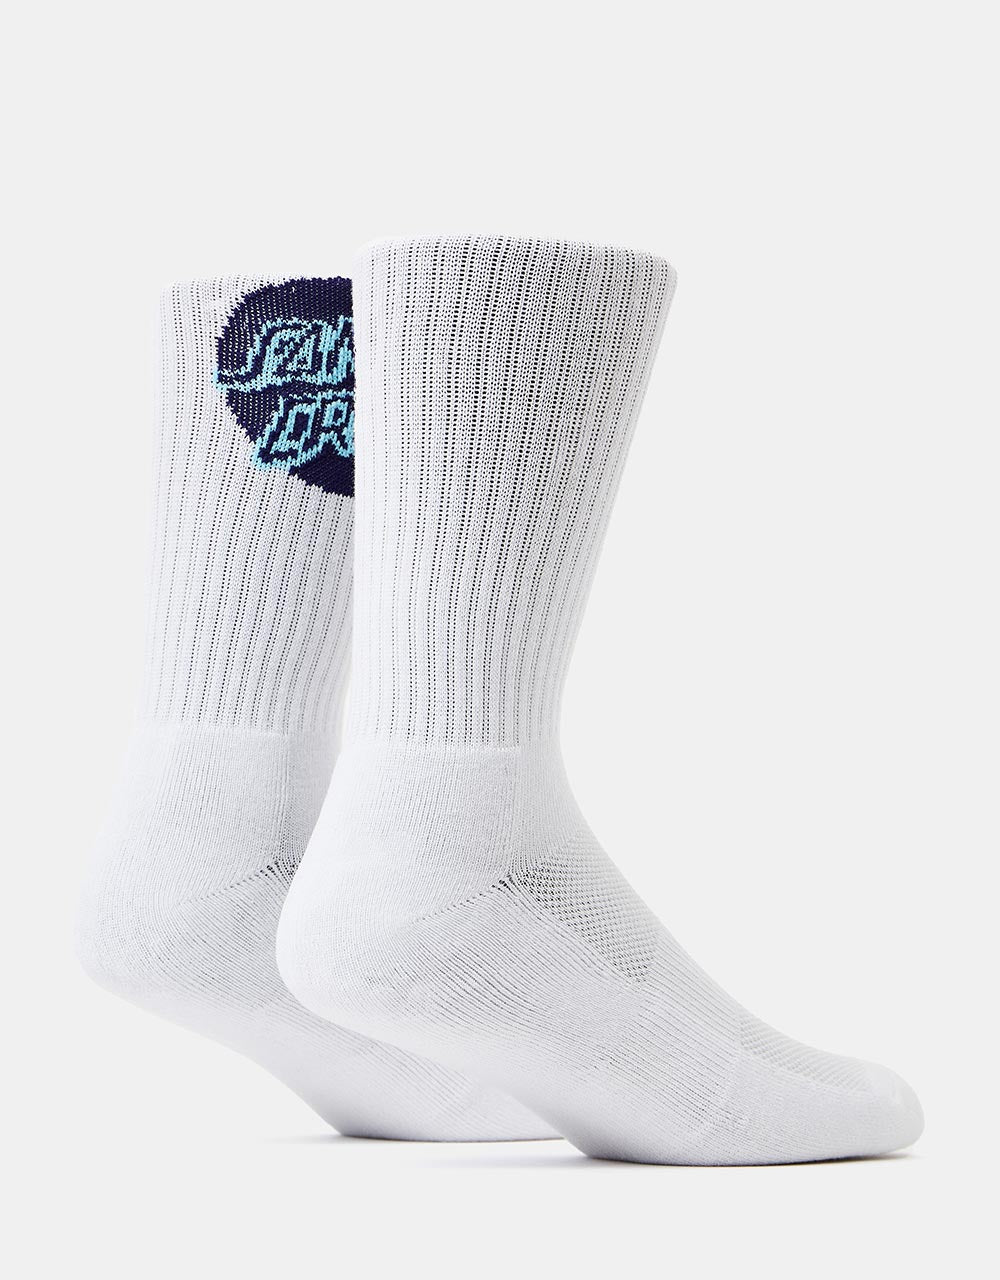 Santa Cruz Shadowless Dot Socks - White